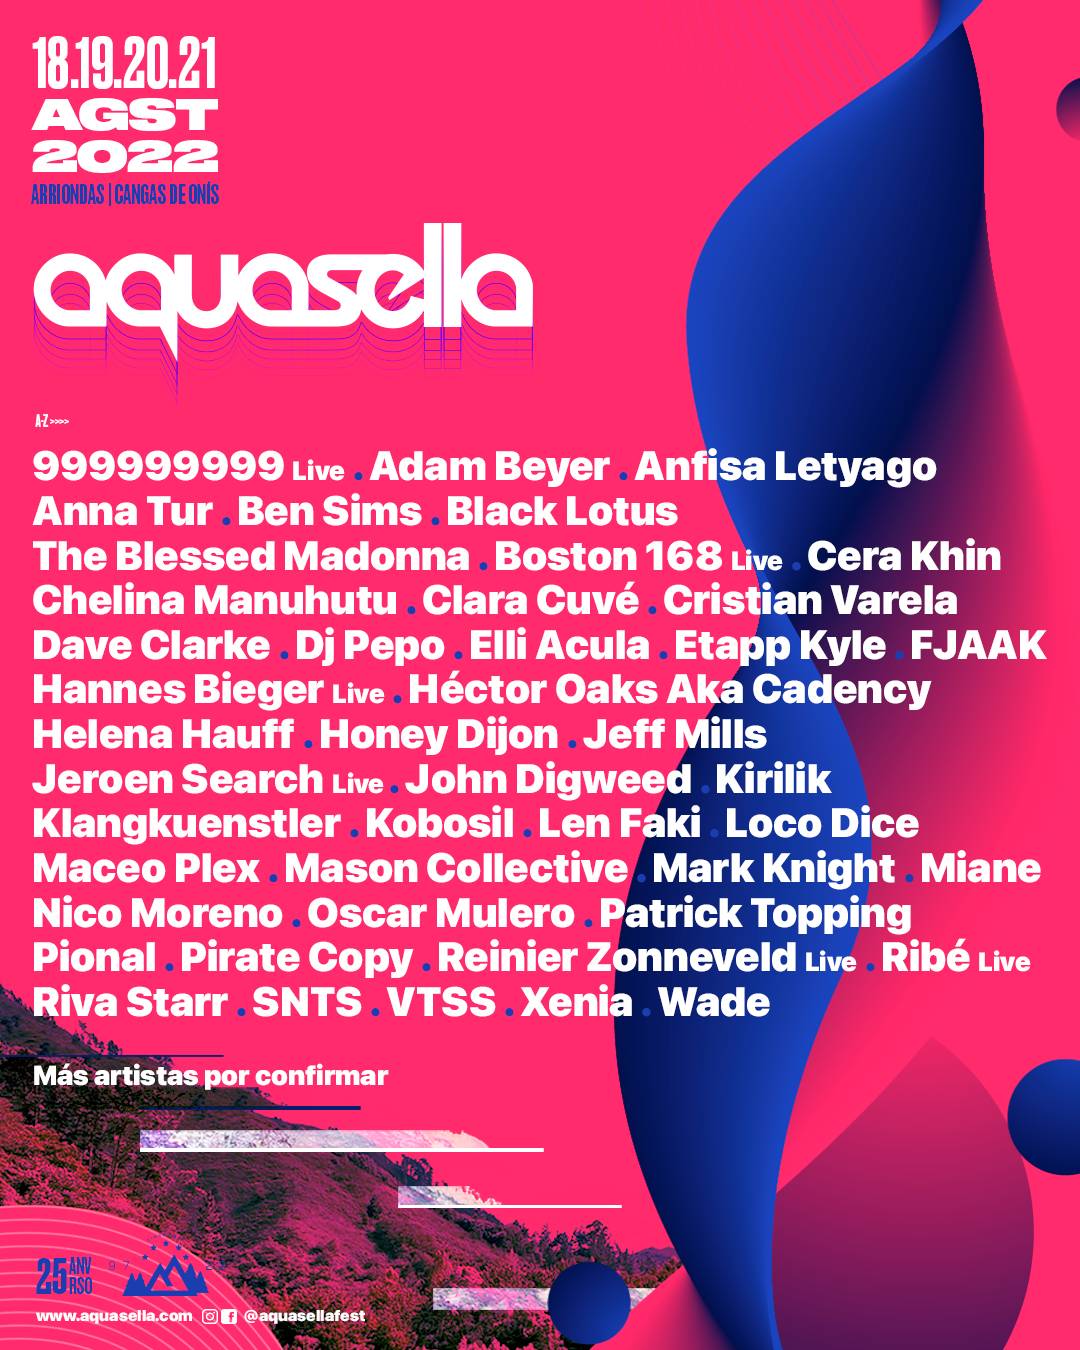 Aquasella 2022 lineup